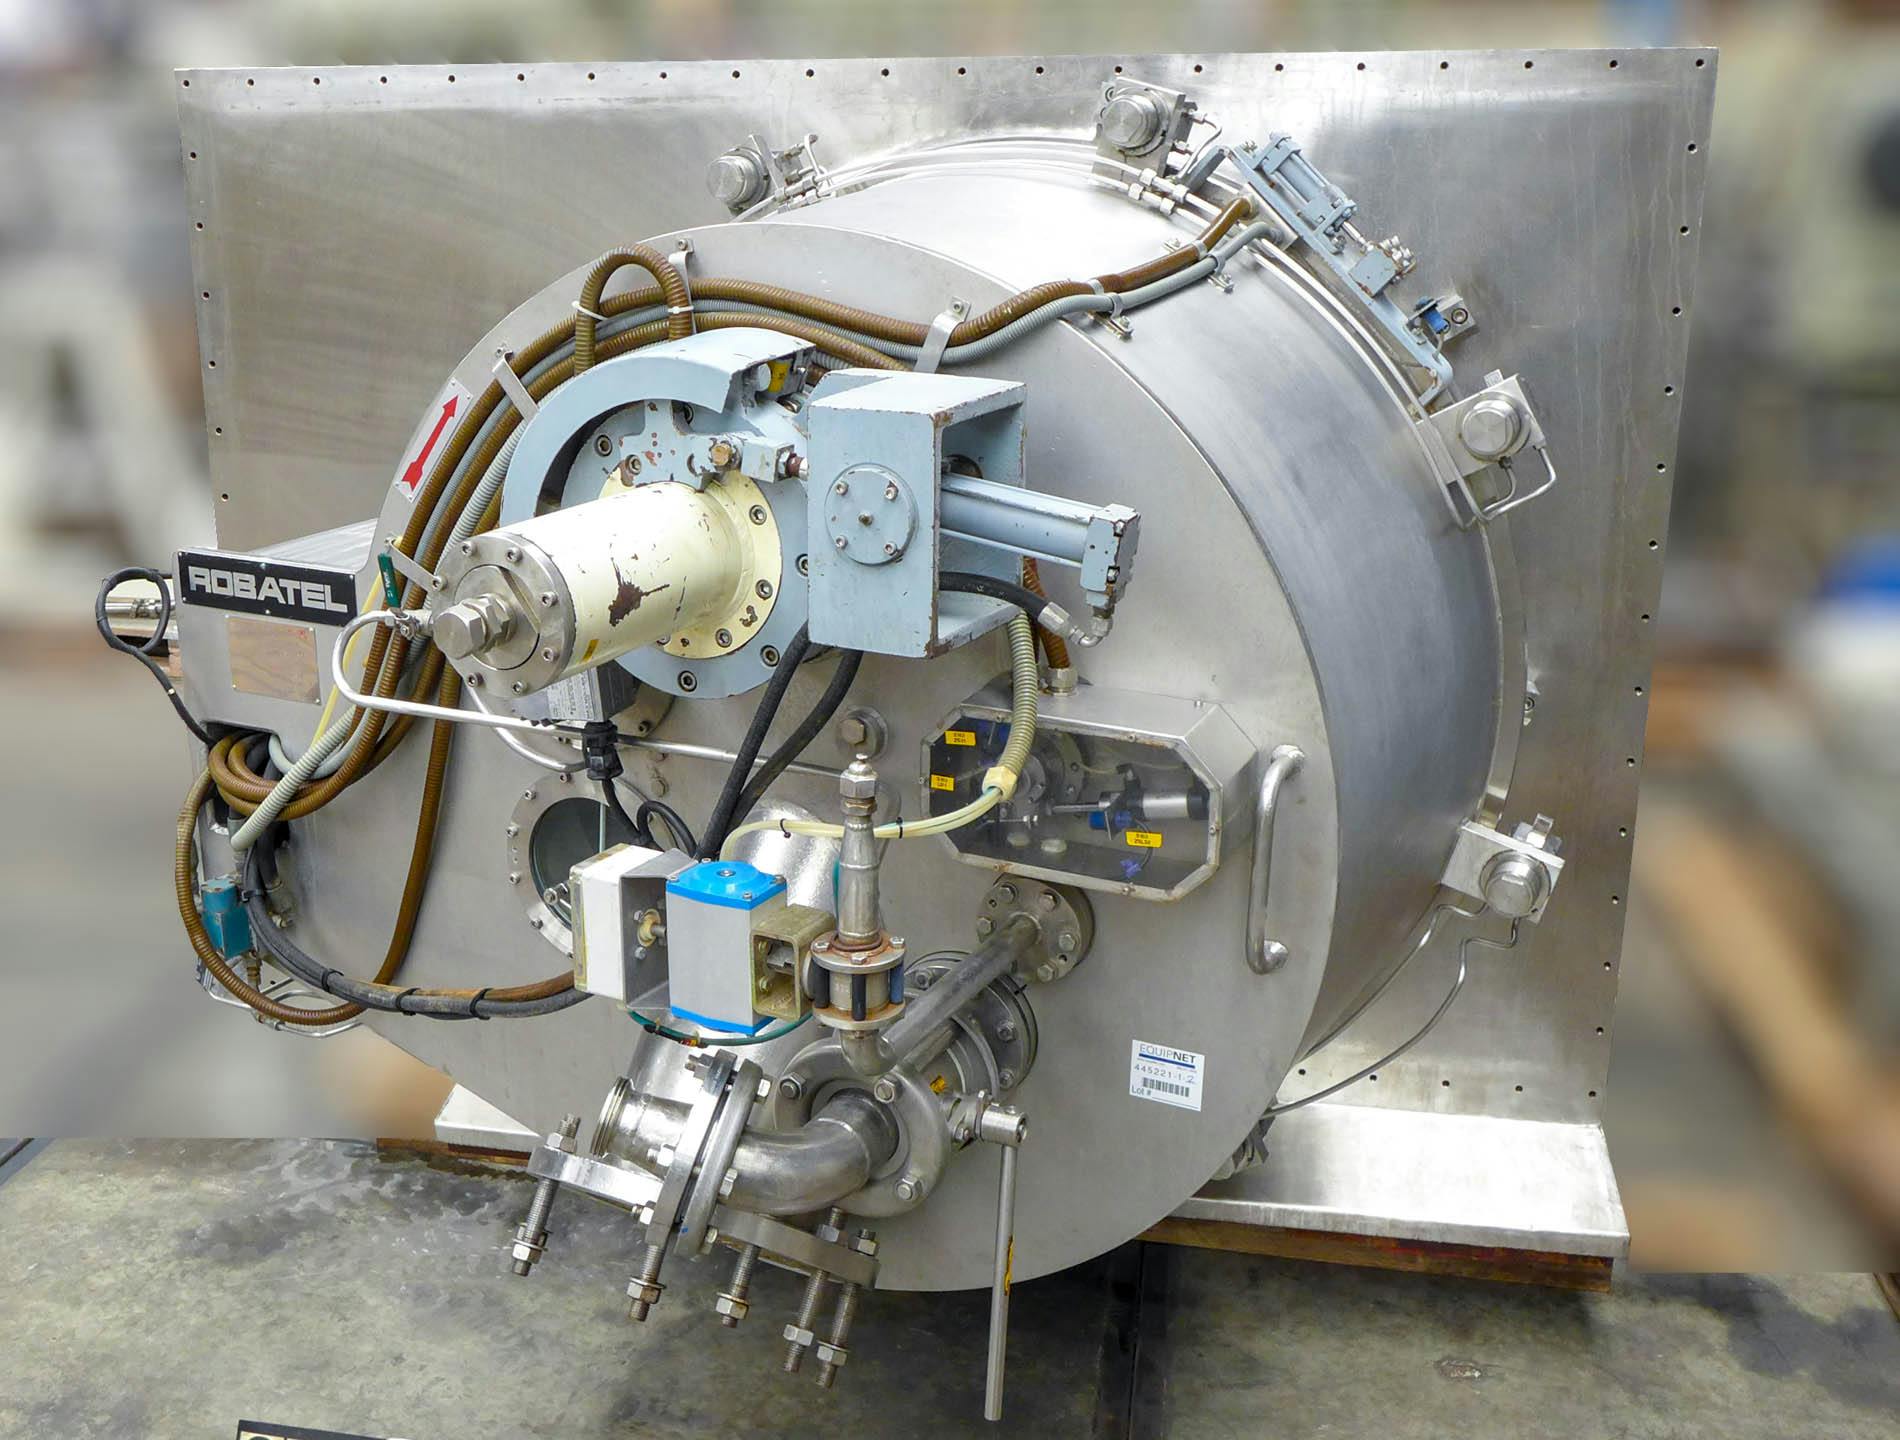 Robatel horizontal peeler centrifuge - Wirówka z obierakami - image 3